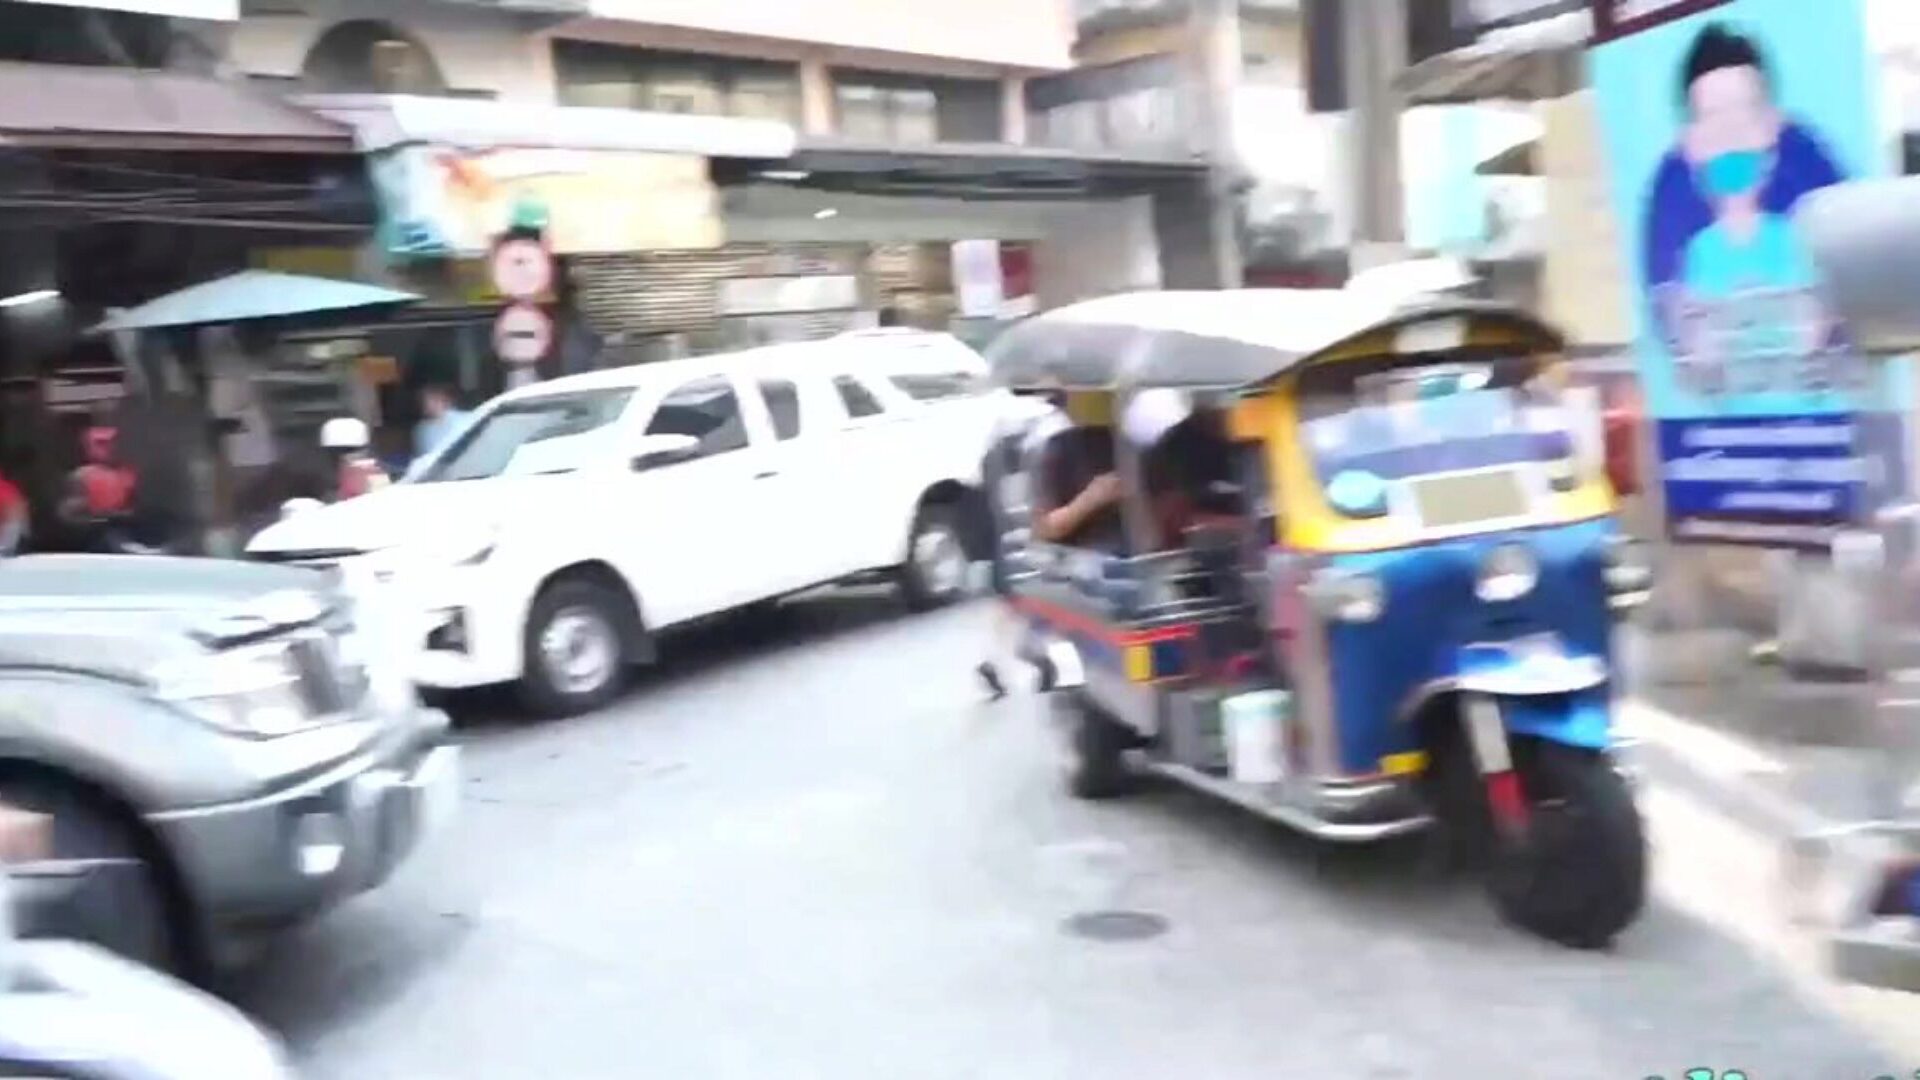 tuktukpatrol stora bröst thailändska brud plockade upp & knullade dumt